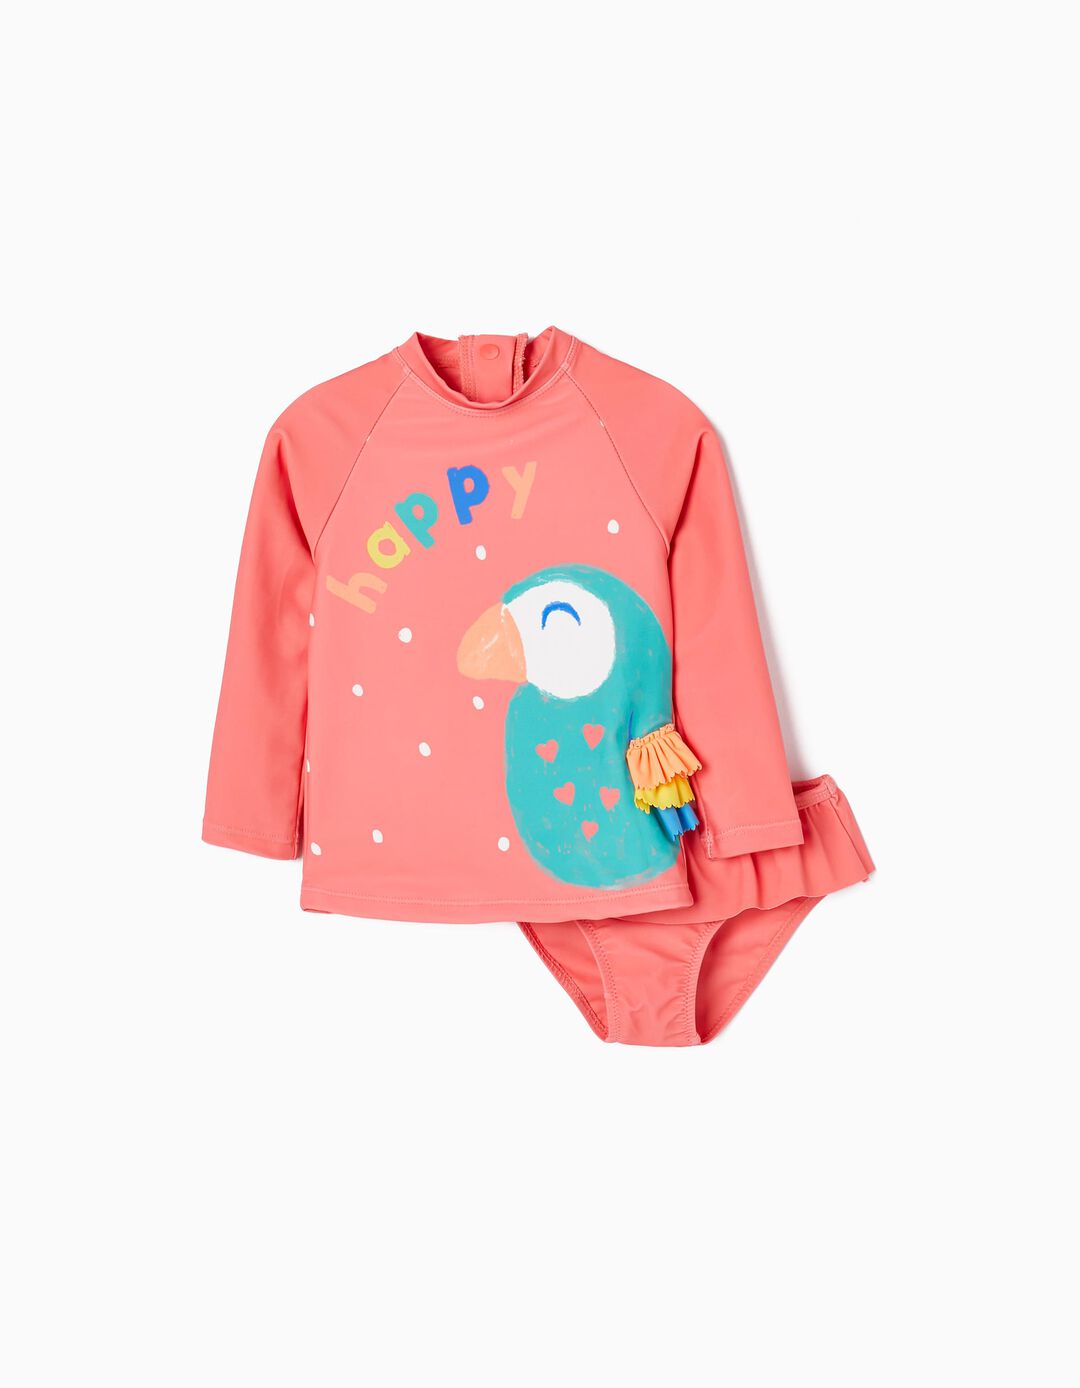 T-shirt + Cueca de Banho Proteção UV 80 para Bebé Menina 'Happy', Coral